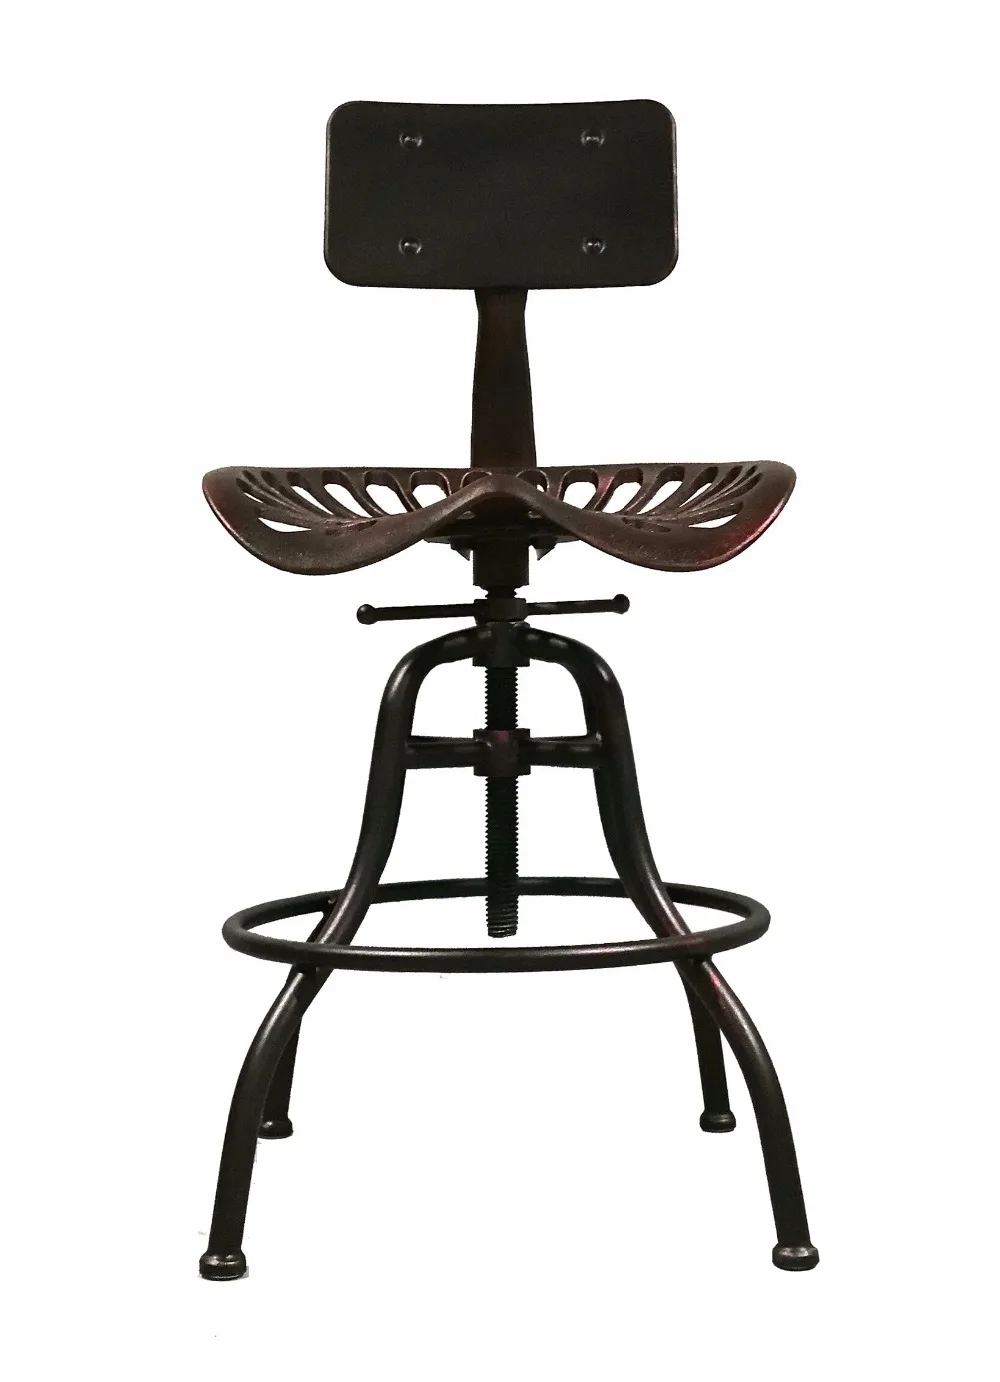 Промышленный стиль мебели Высота Регулируемый Барный стул поворотный Топ барный стул металлический кухонный Остров обеденный стул трактор сиденье